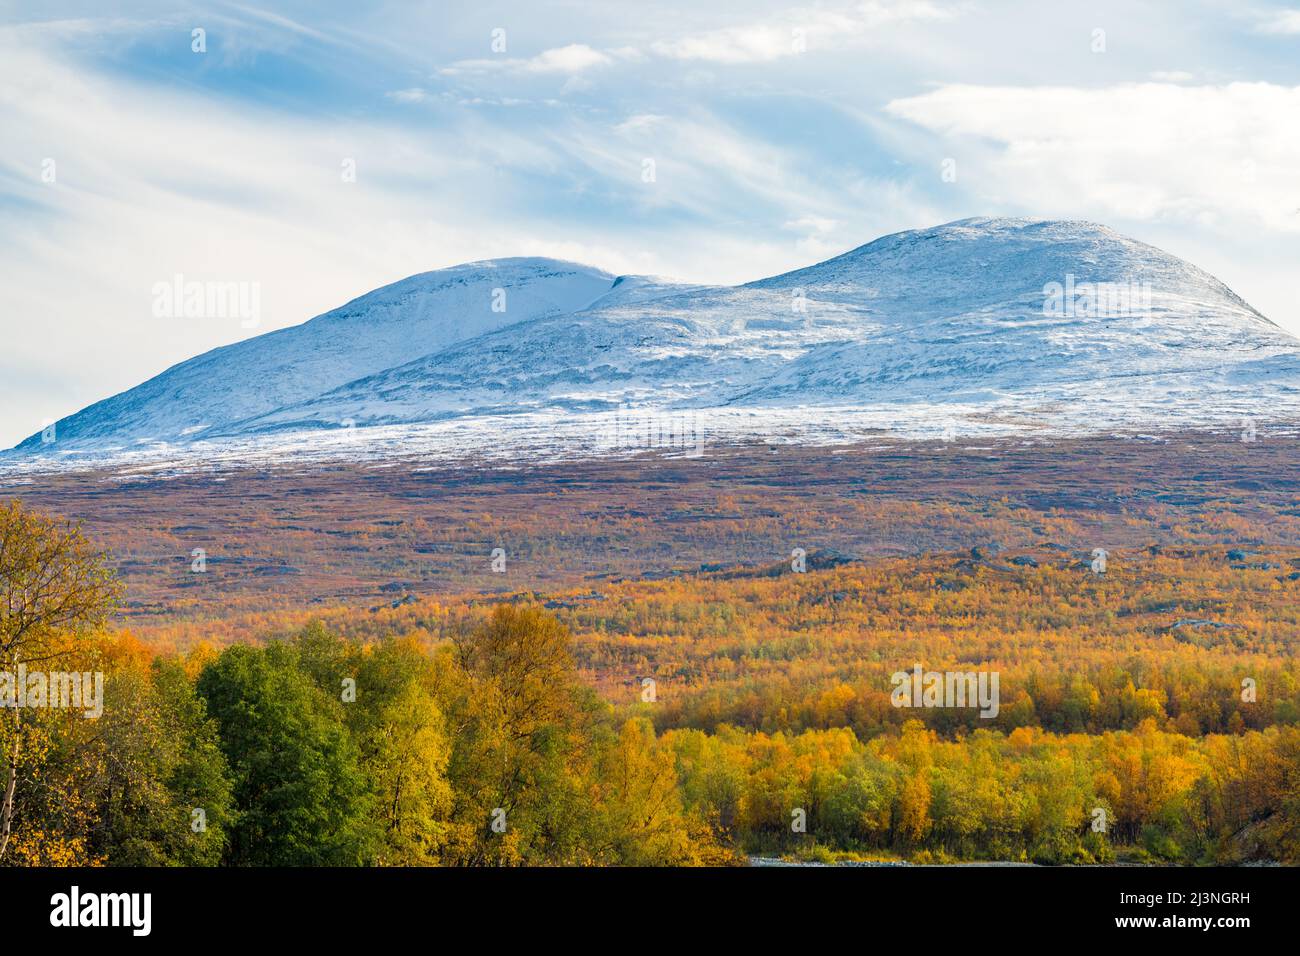 Parc national d'Abisko en septembre avec des couleurs d'automne et de la neige sur les montagnes, parc national d'Abisko, Laponie suédoise, Suède Banque D'Images